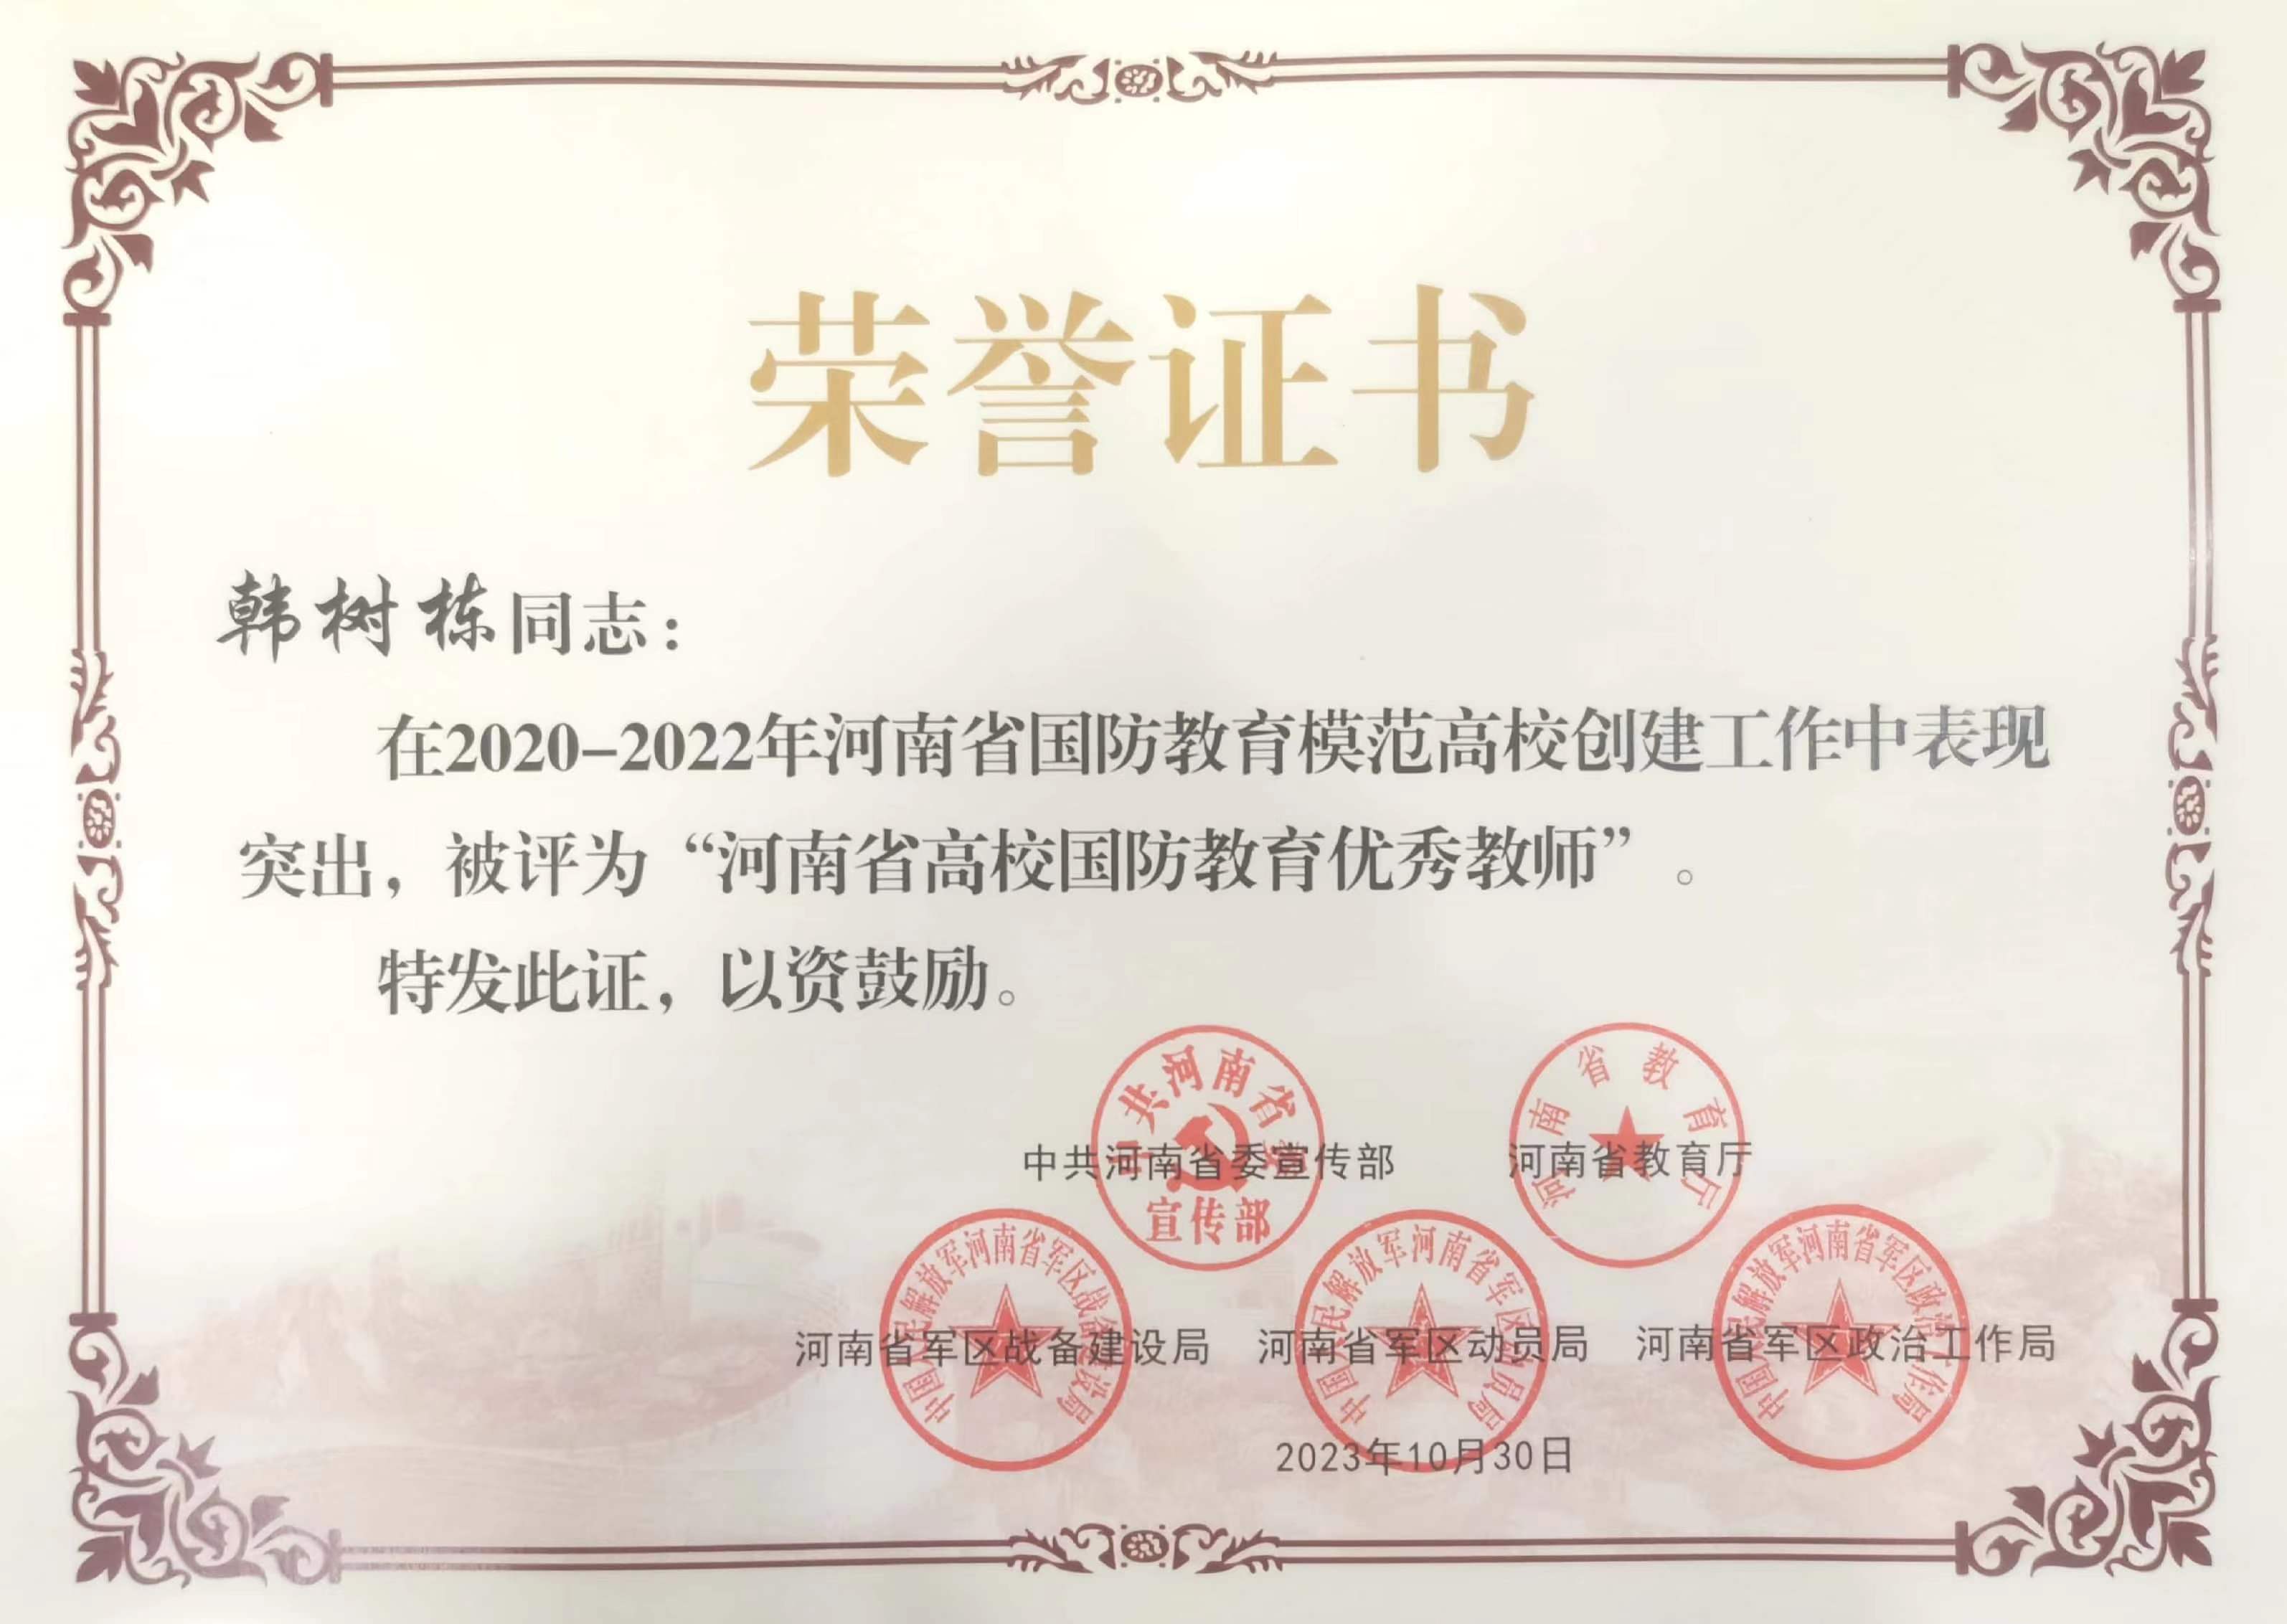 11月16日,河南省国防教育模范高校命名大会在郑州大学召开